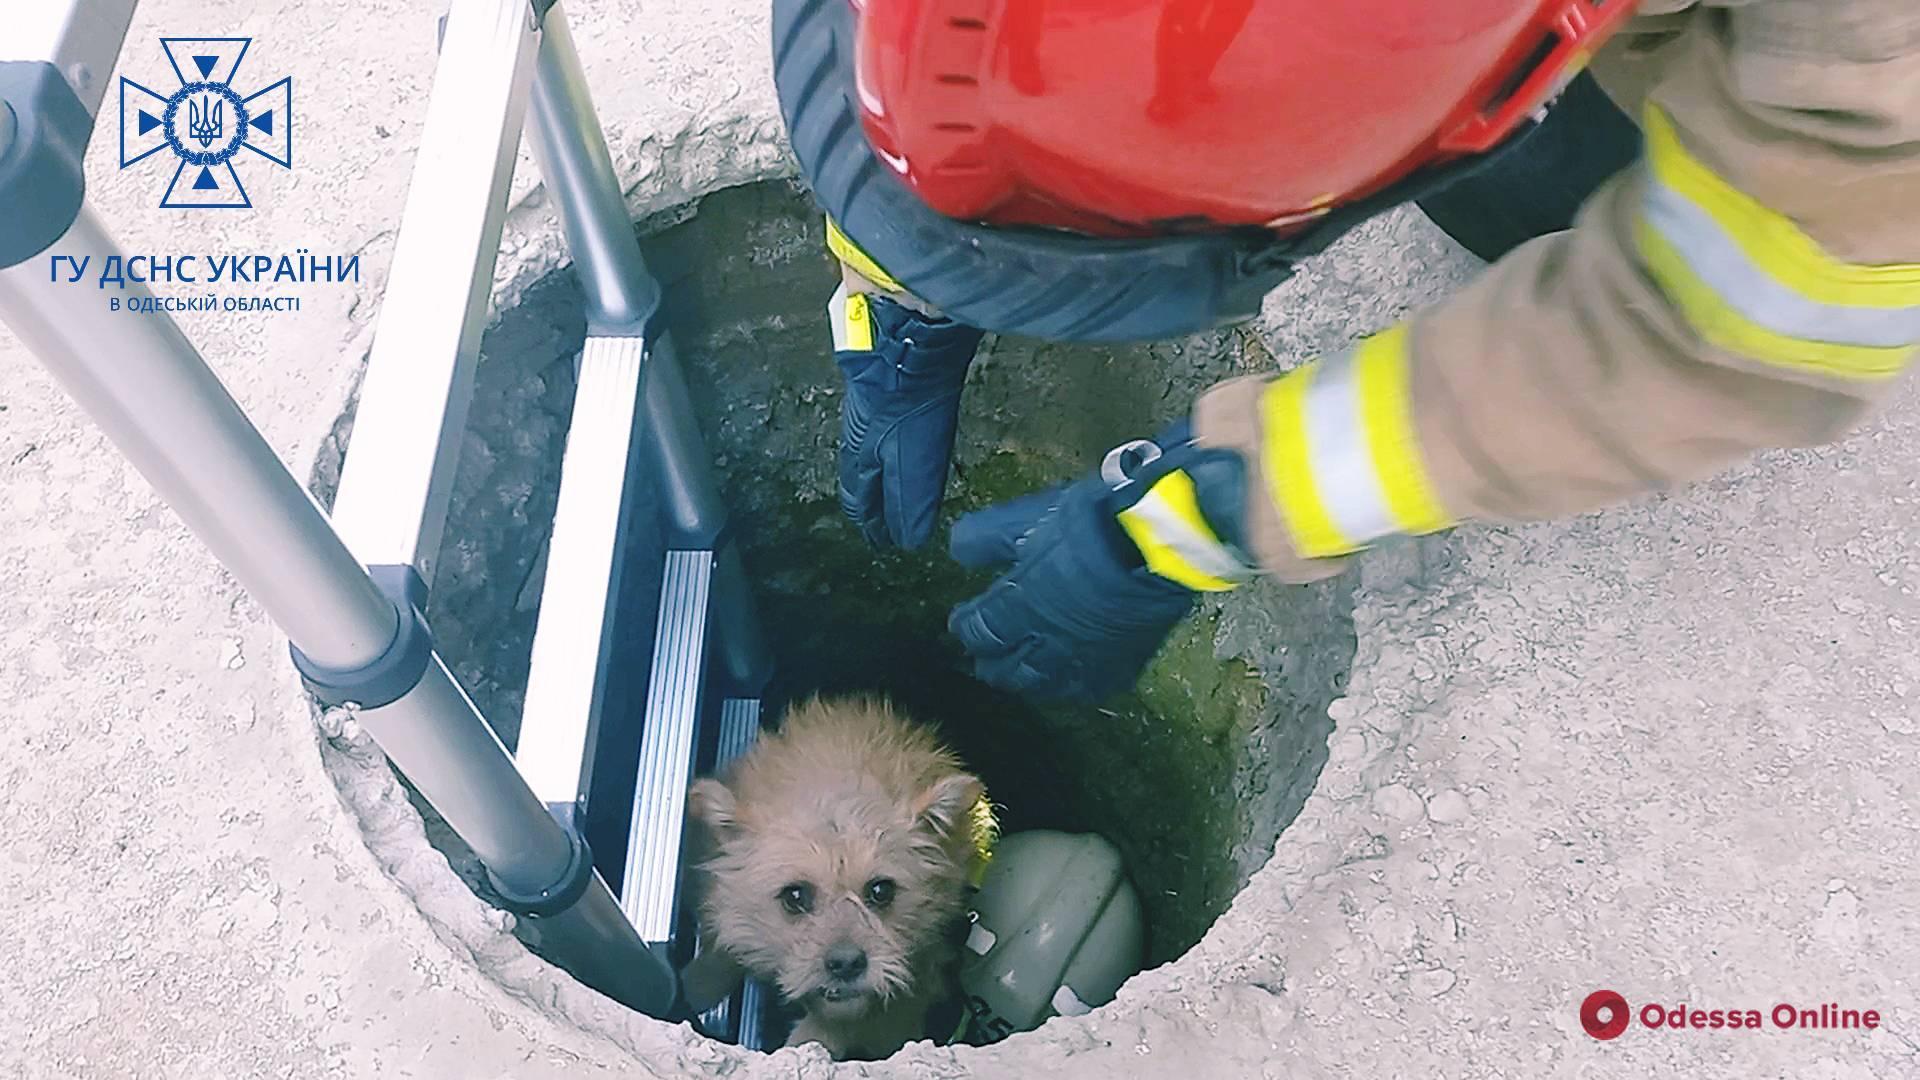 В Подольске спасли собаку, которая упала в люк